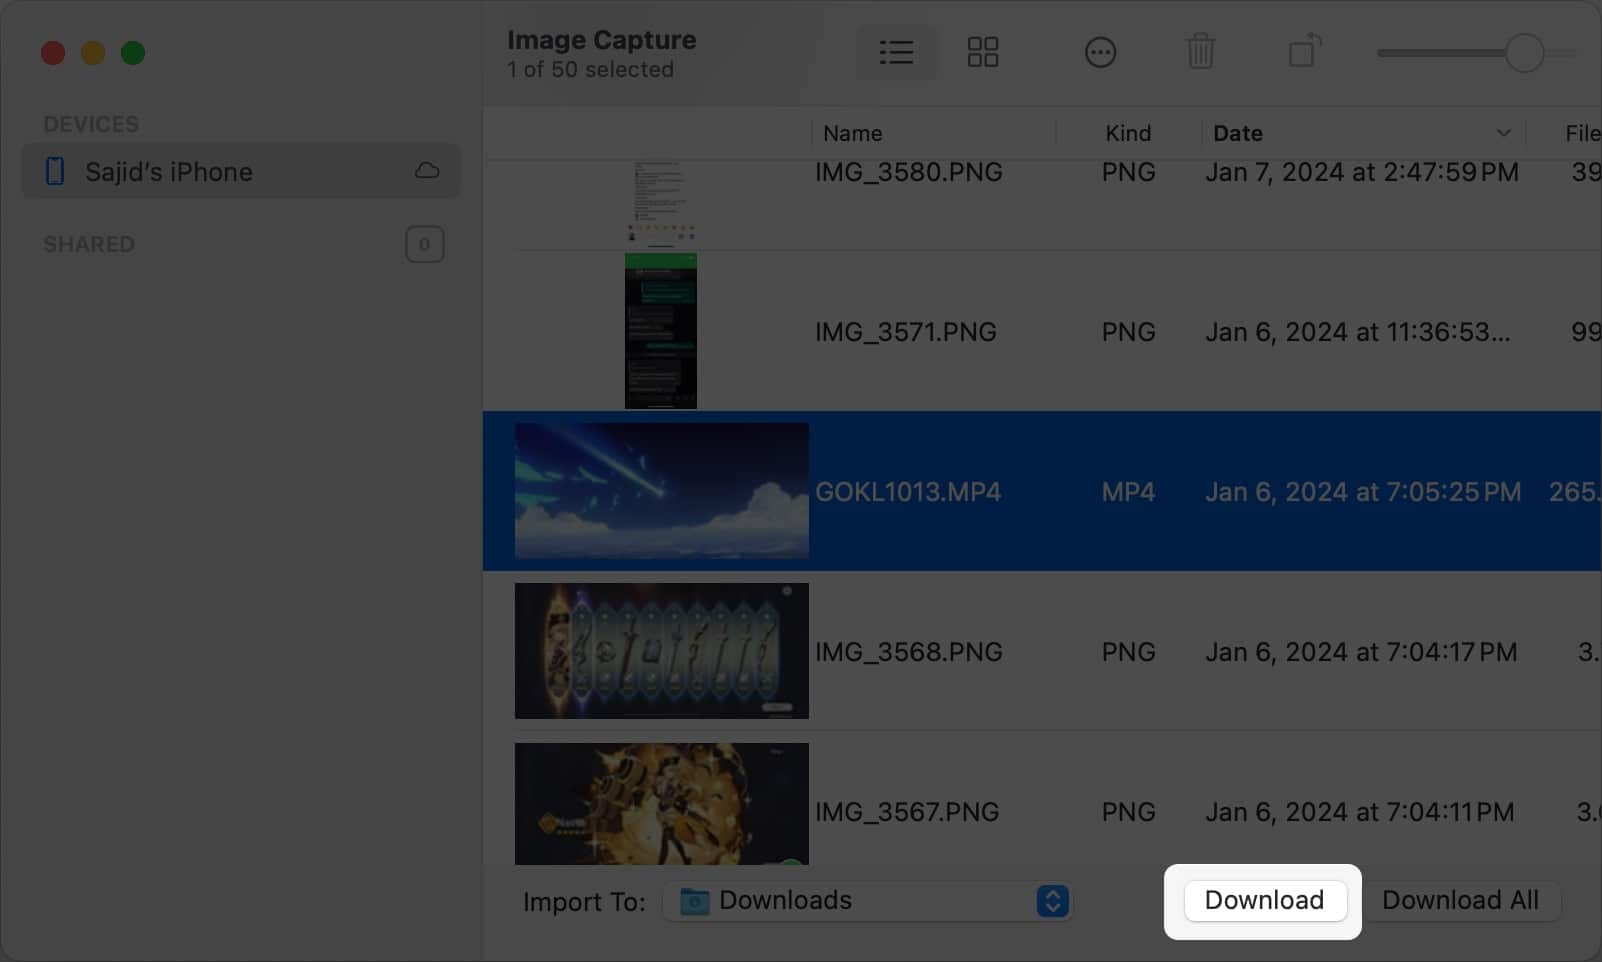 Klik Muat Turun dalam ImageCapture untuk mengimport video yang dipilih ke Mac